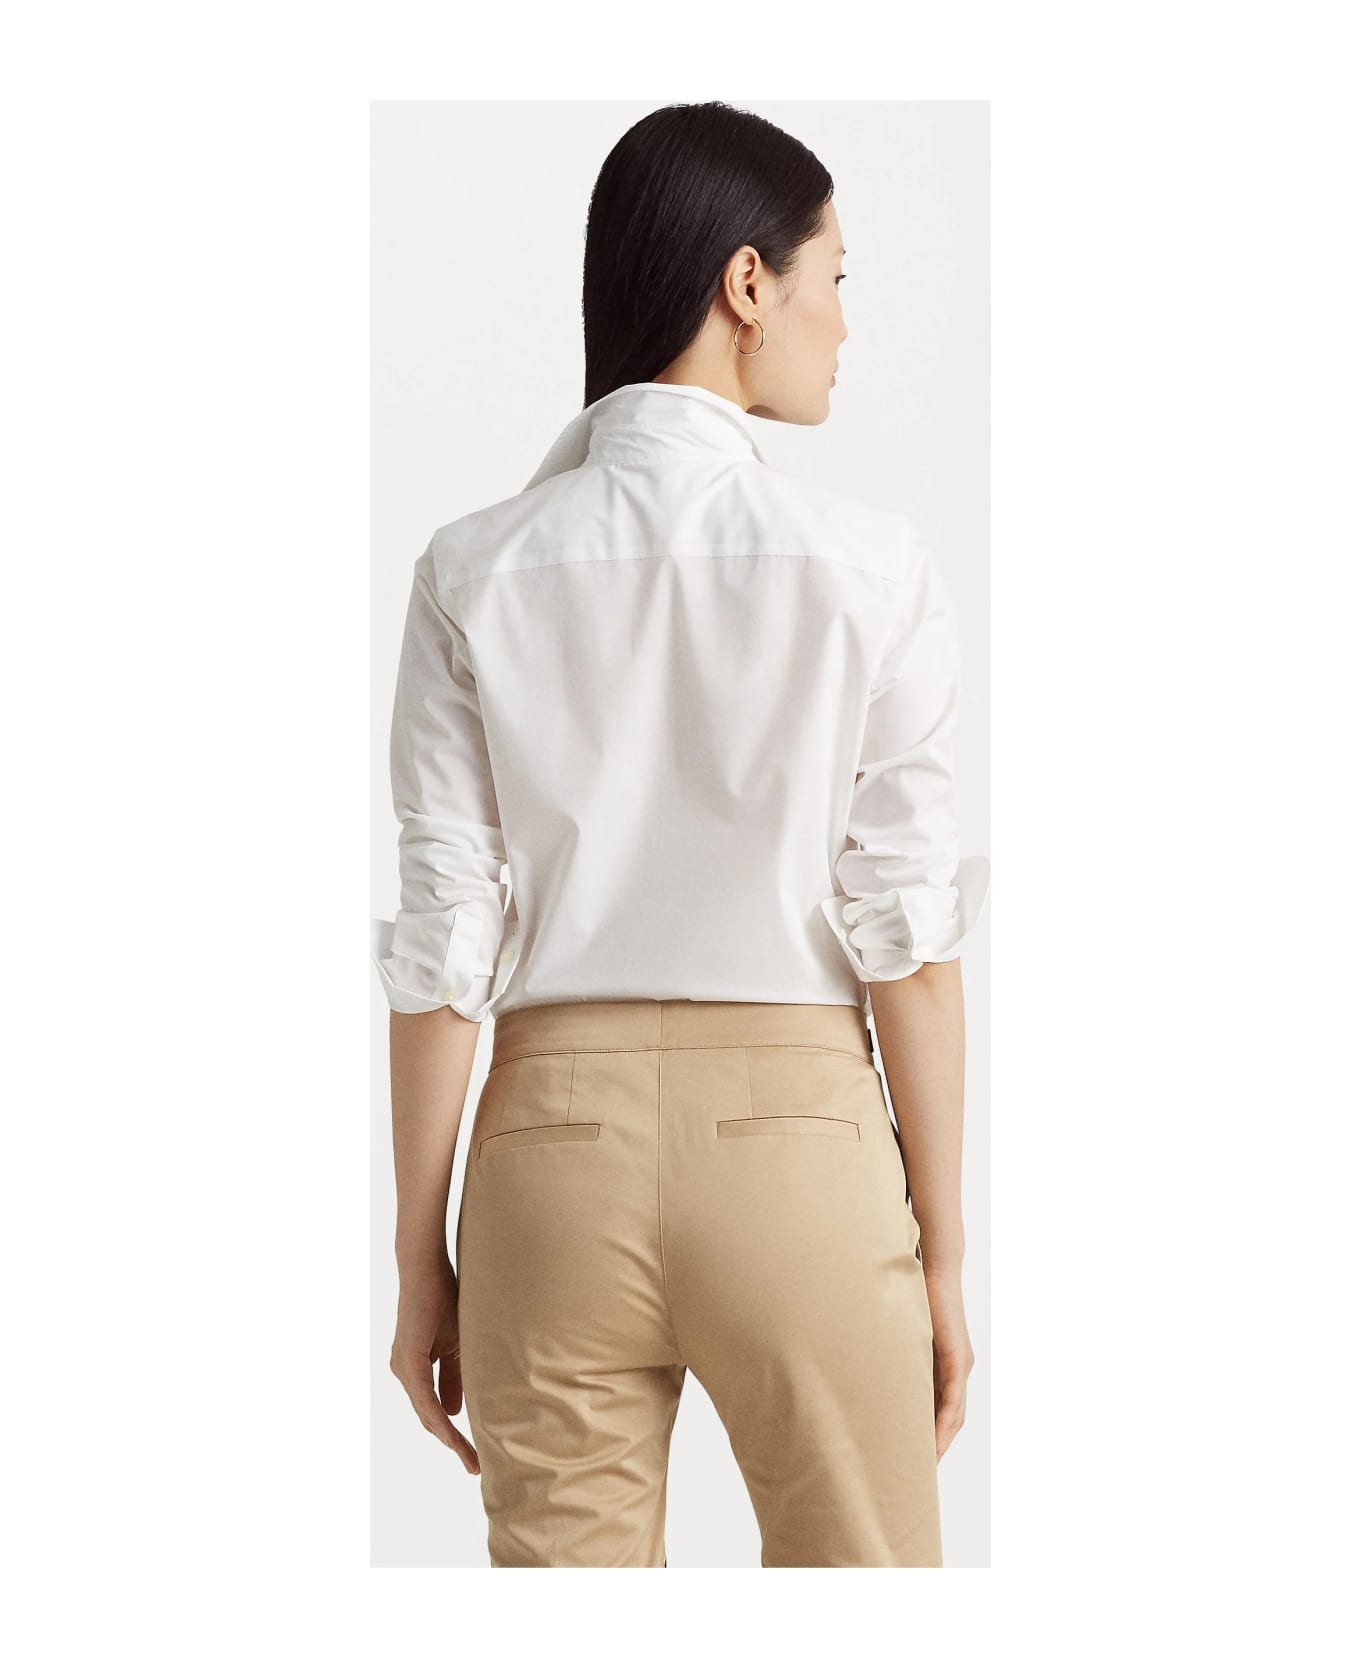 Ralph Lauren Jamelko Long Sleeve Shirt - White